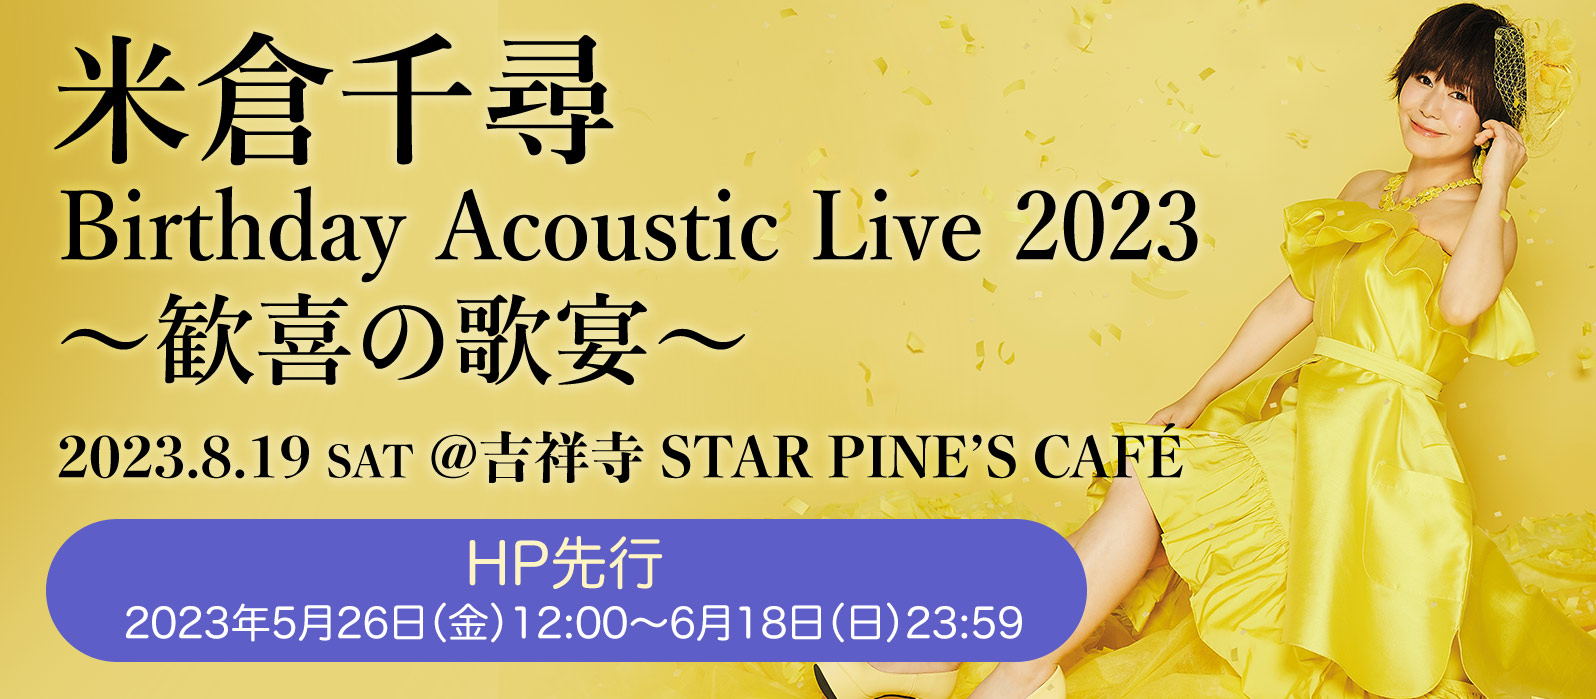 米倉千尋 Birthday Acoustic Live 2023〜歓喜の歌宴〜